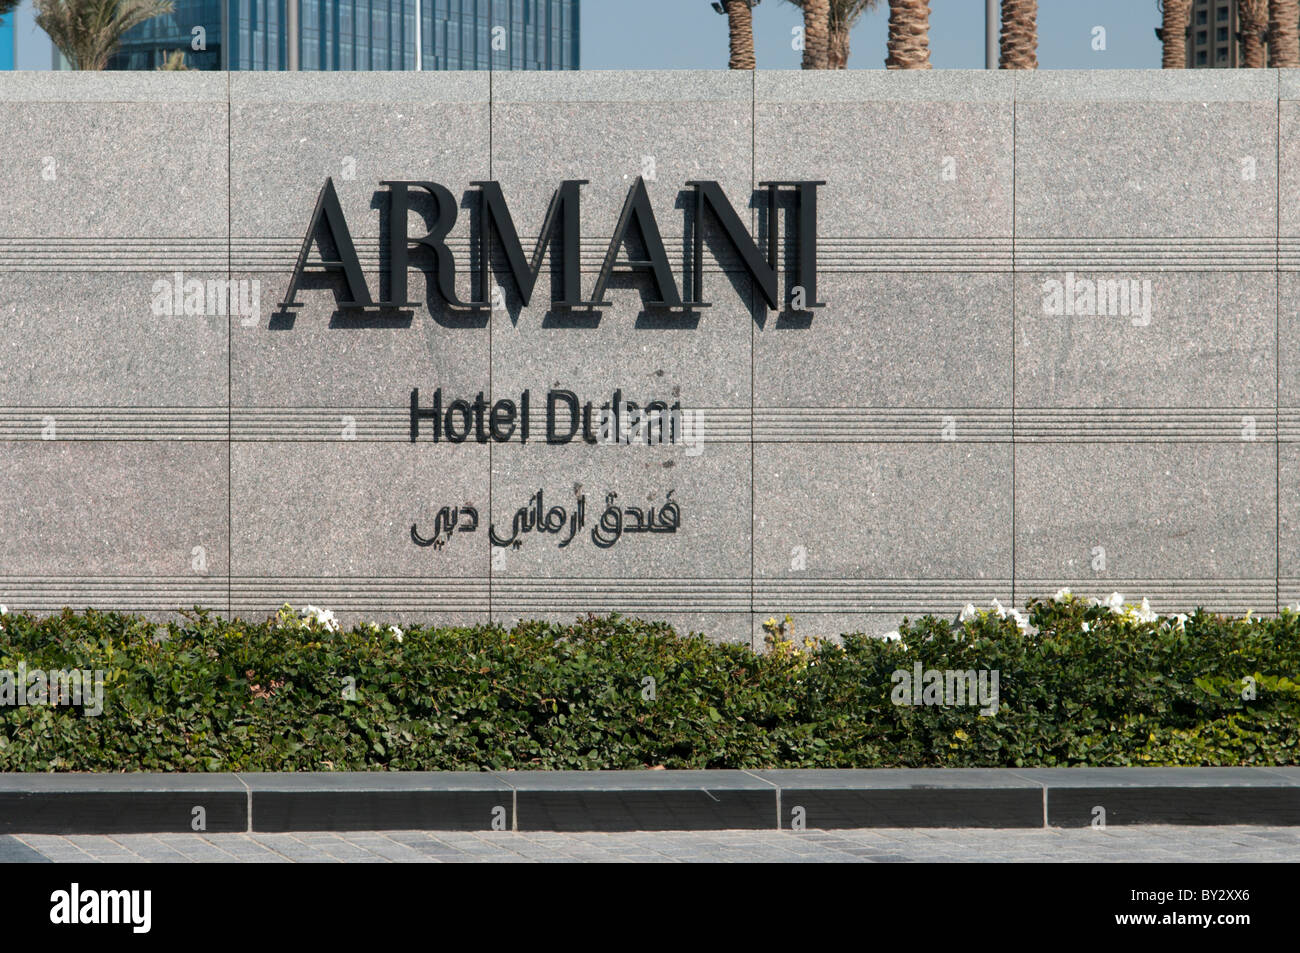 Armani hotel entrance sign, Dubai Stock Photo